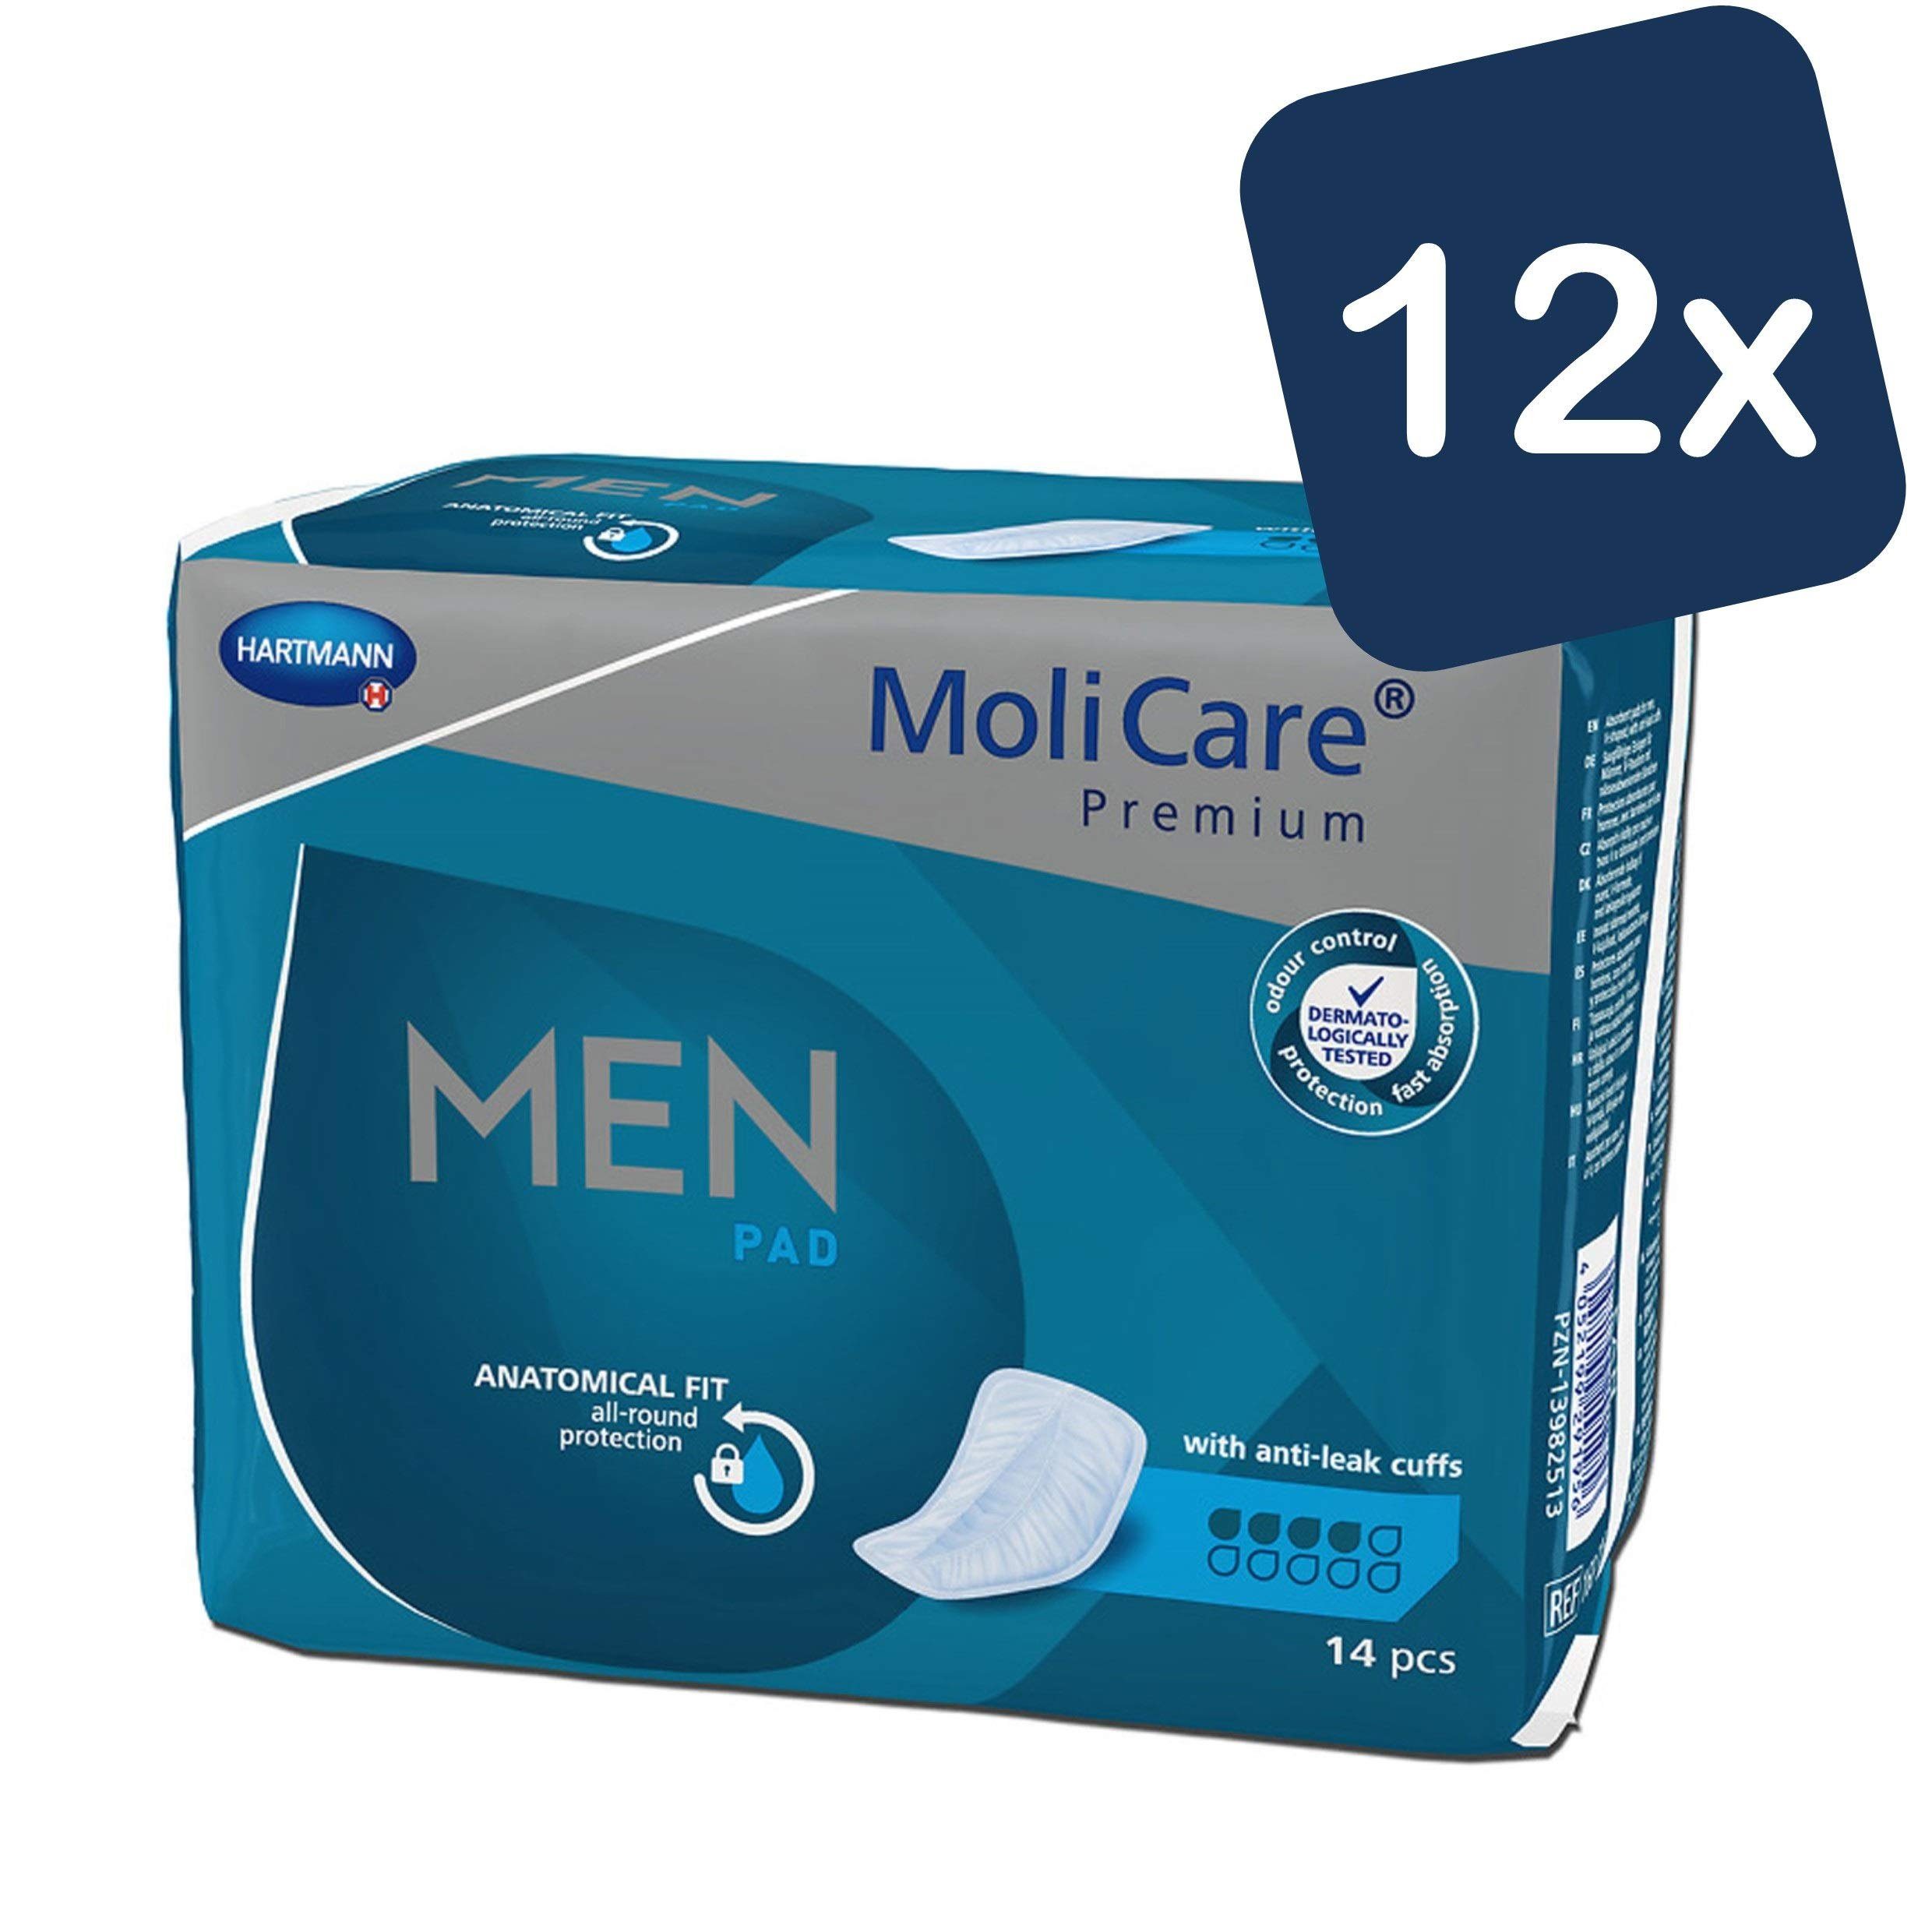 Molicare Einlage Premium MEN PAD: Inkontinenz-Einlage für Männer bei Blasenschwäche, 4 Tropfen, v-förmige Passform, 14 Stück (12x14)